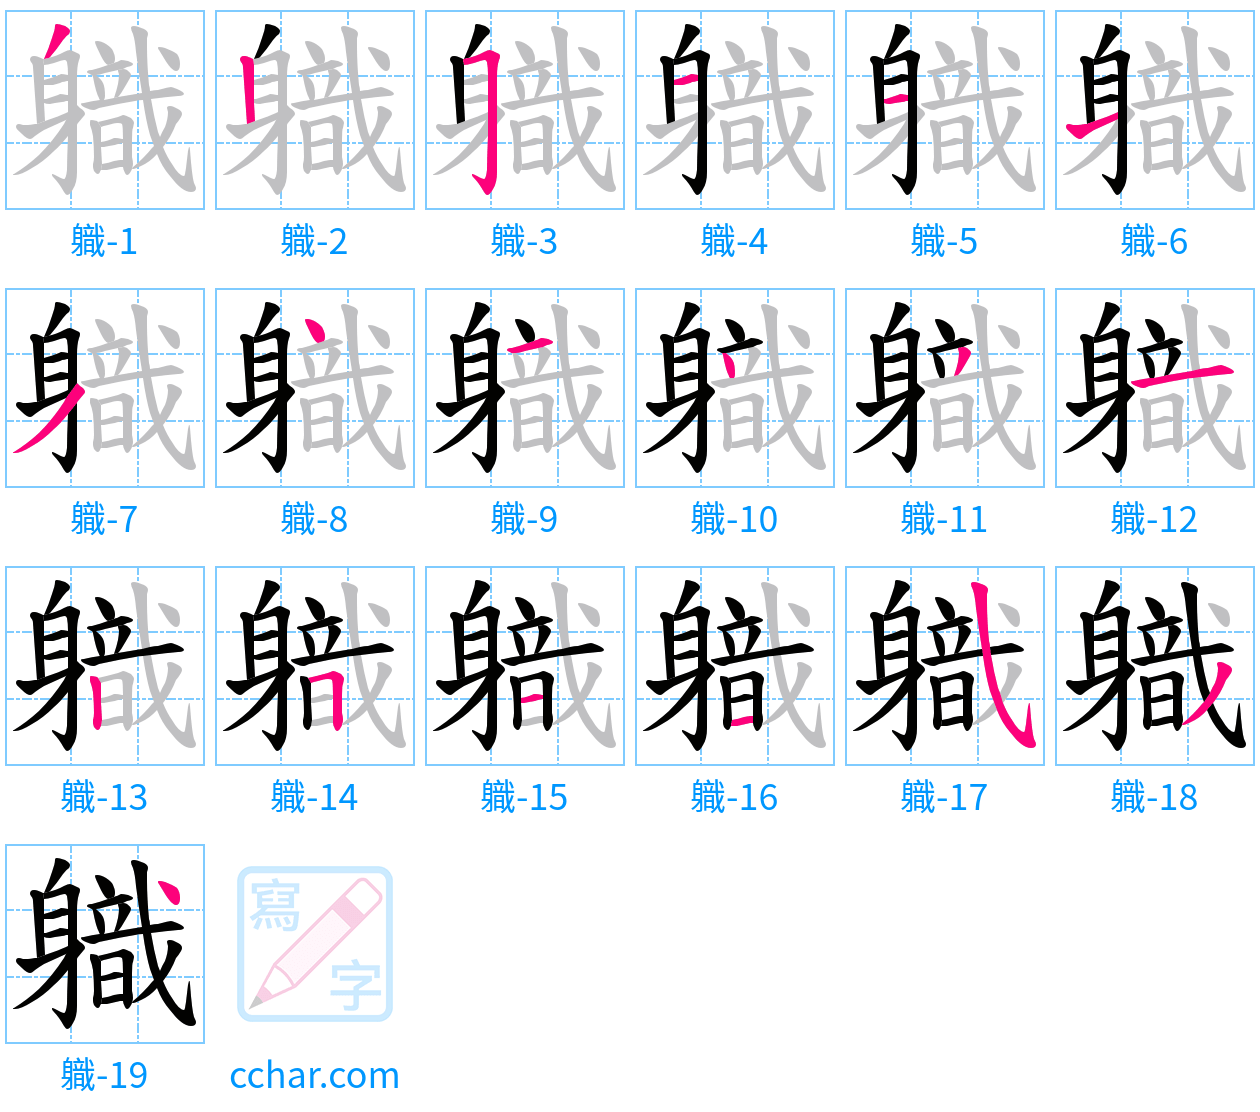 軄 stroke order step-by-step diagram